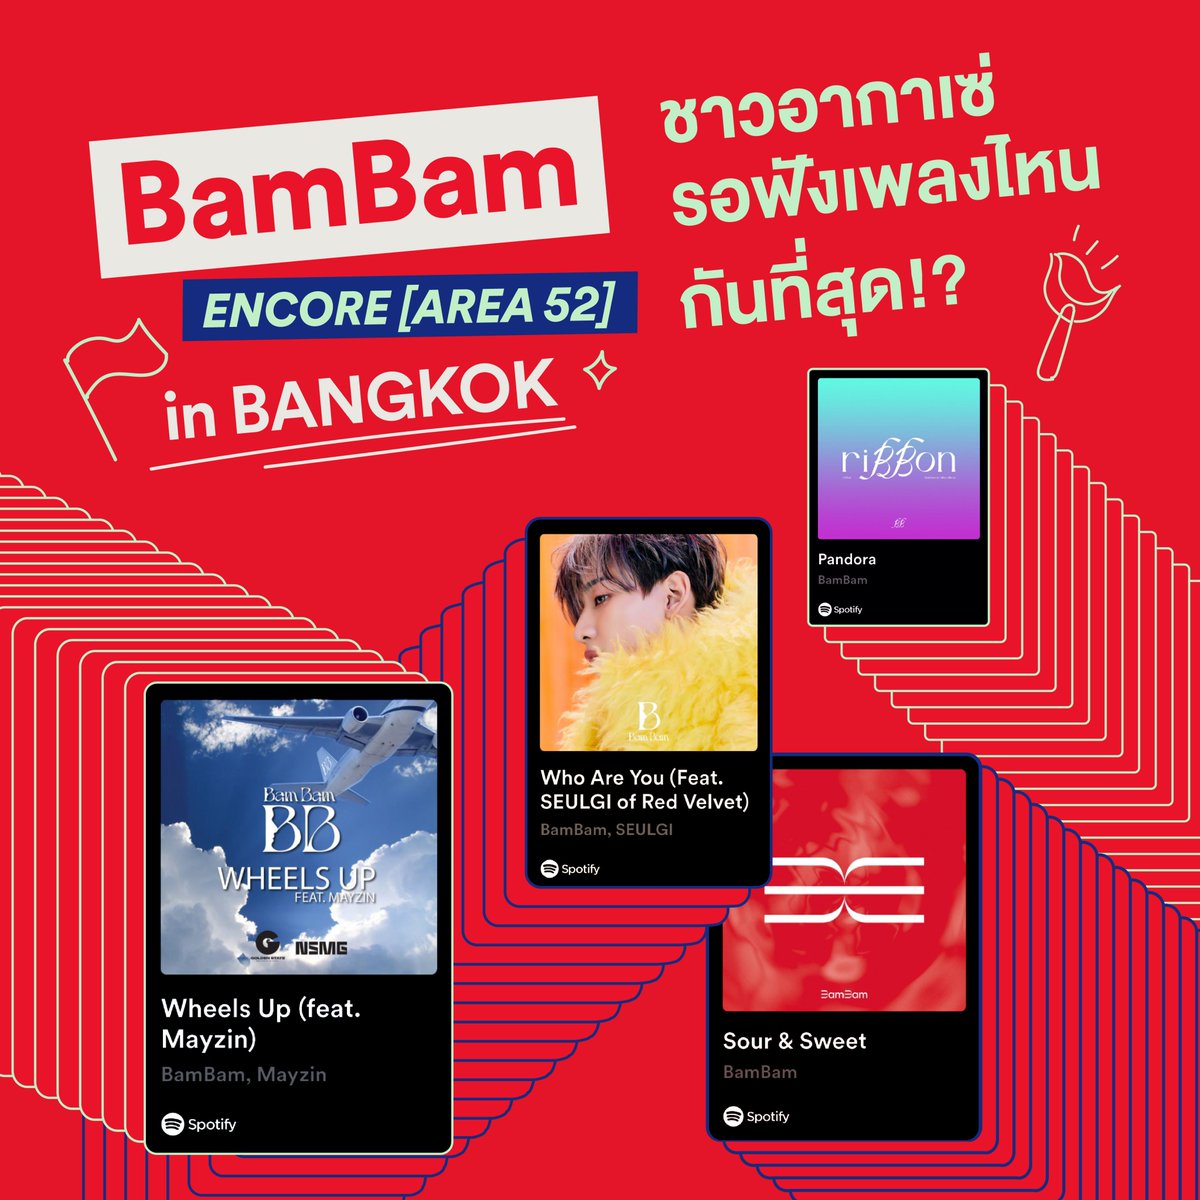 อีกวันเดียวเท่านั้นจะได้เจอตะหนูแล้ว ตื่นเต้ลลเว่อร์ 😍นี่วอร์มคอรอ @BamBam1A ที่เพลย์ลิสต์ On Tour Thailand: BamBam แบบนอนสต็อปแล้วนะ 👉🏻อย่าลืมไปซ้อมร้องเพลงที่เพลย์ลิสต์ตามลิ้งก์นี้เลย! open.spotify.com/playlist/37i9d…